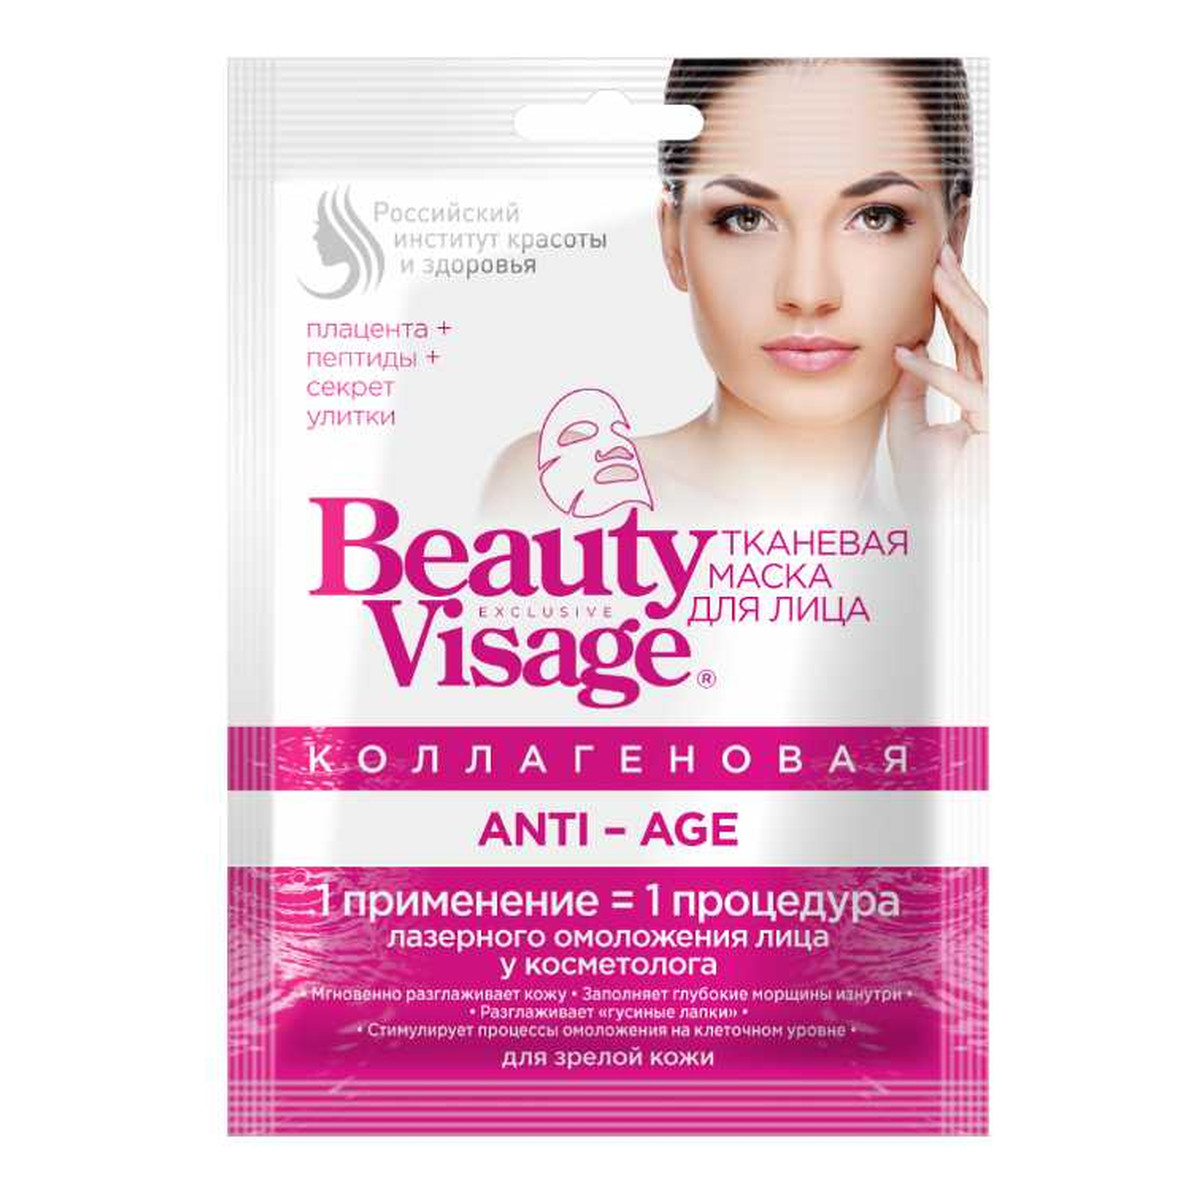 Fitokosmetik Beauty Visage Anti-AGE Kolagenowa maska do twarzy w płachcie